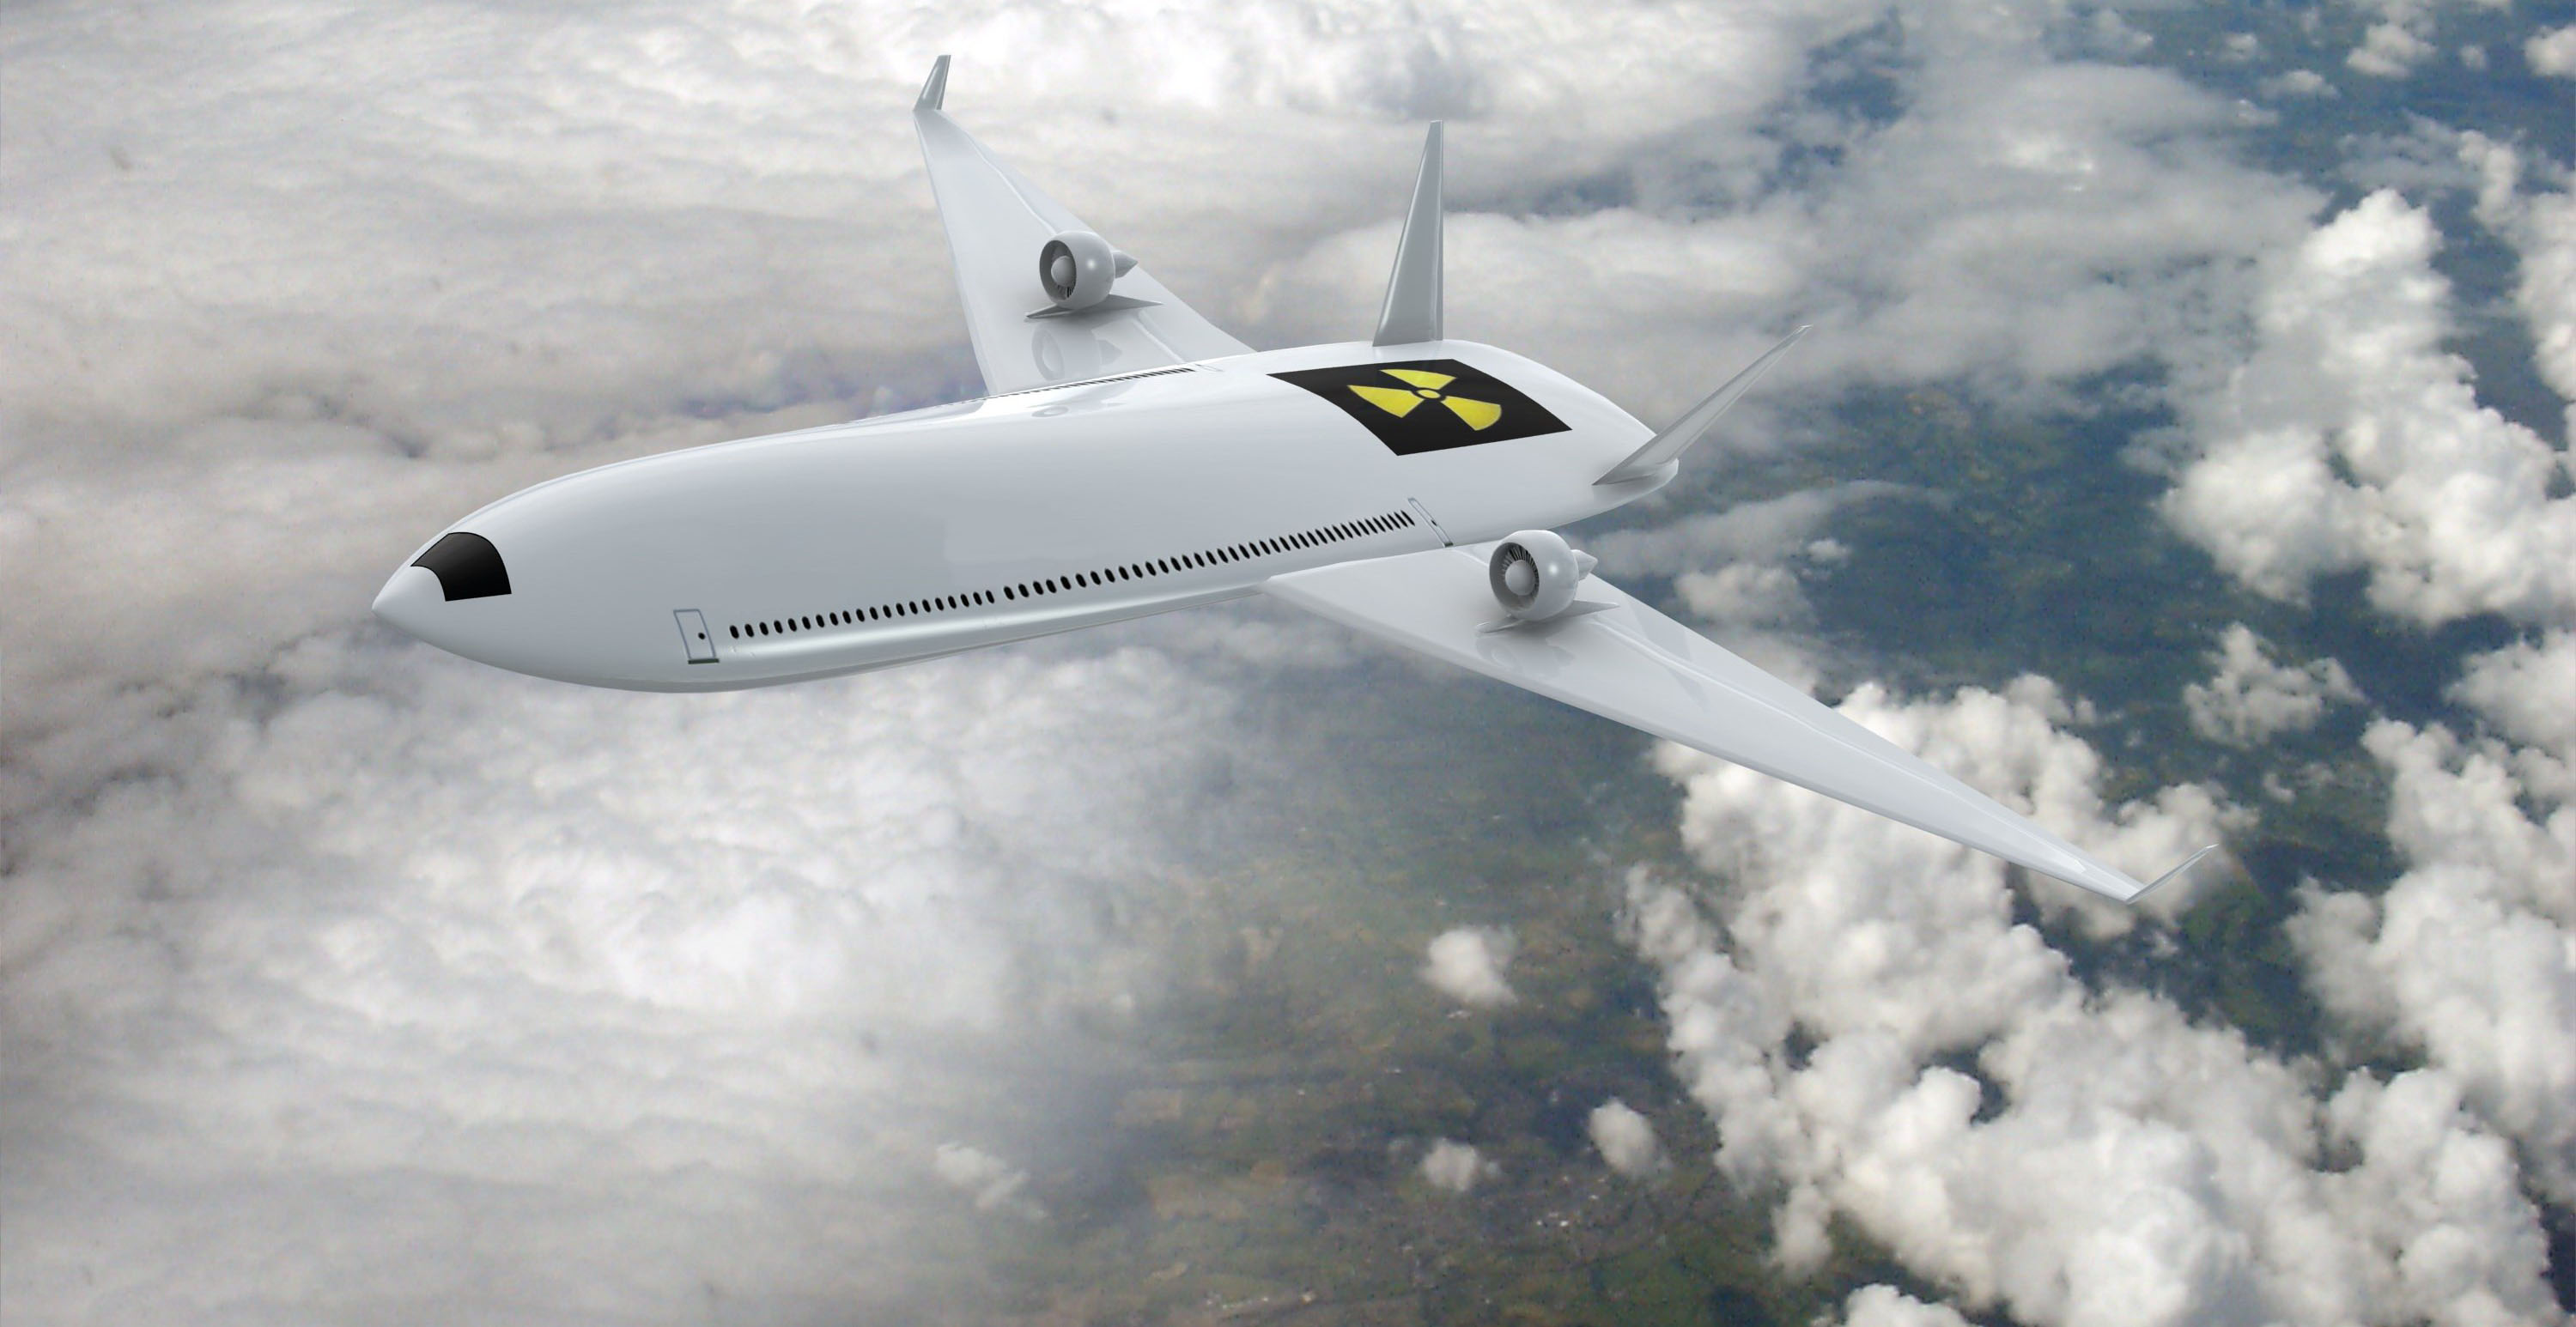 A Nuclear-Powered Passenger Aircraft